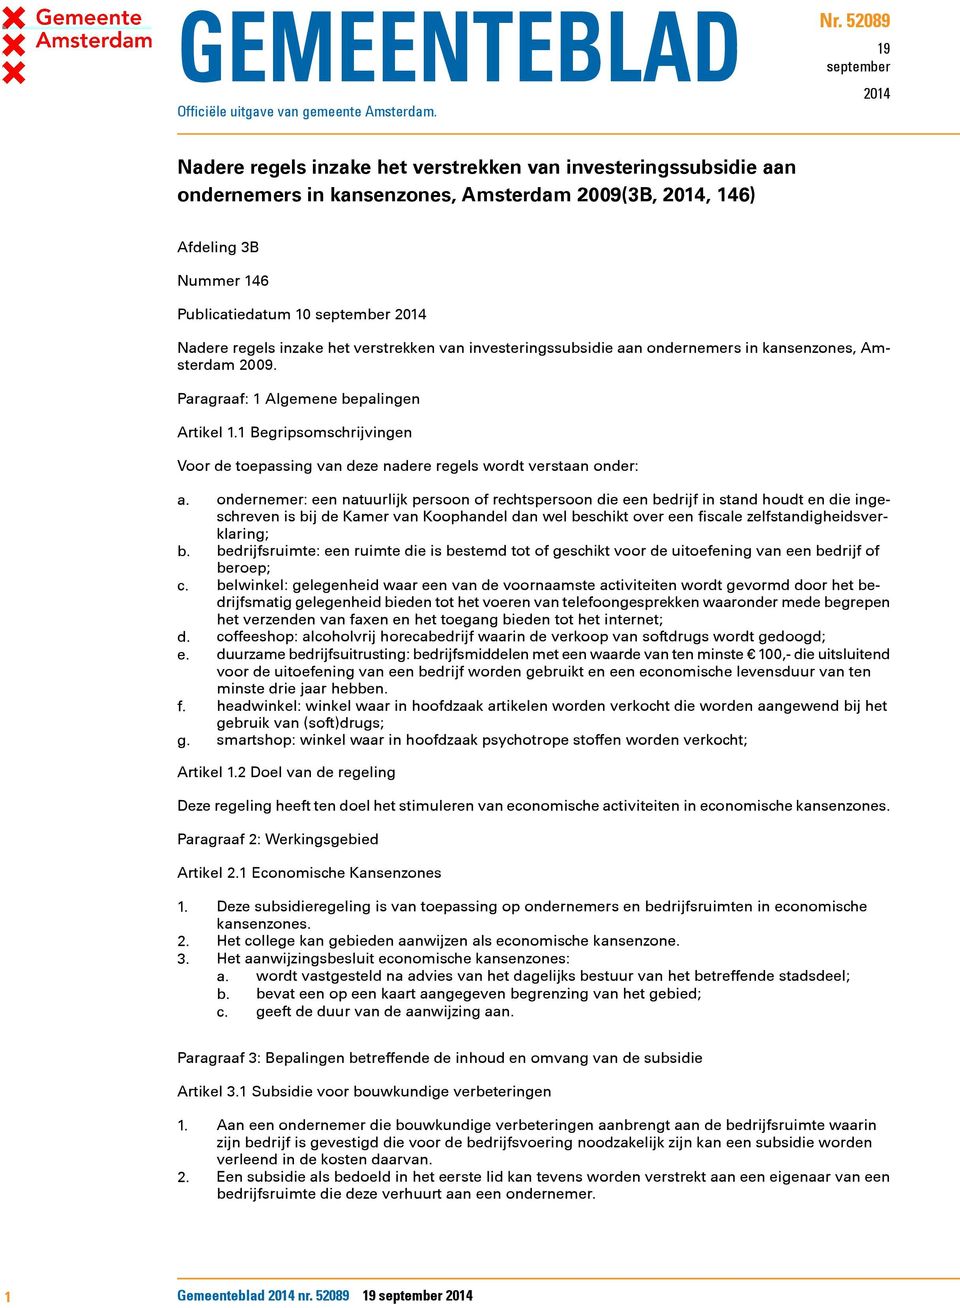 inzake het verstrekken van investeringssubsidie aan ondernemers in kansenzones, Amsterdam 2009. Paragraaf: 1 Algemene bepalingen Artikel 1.